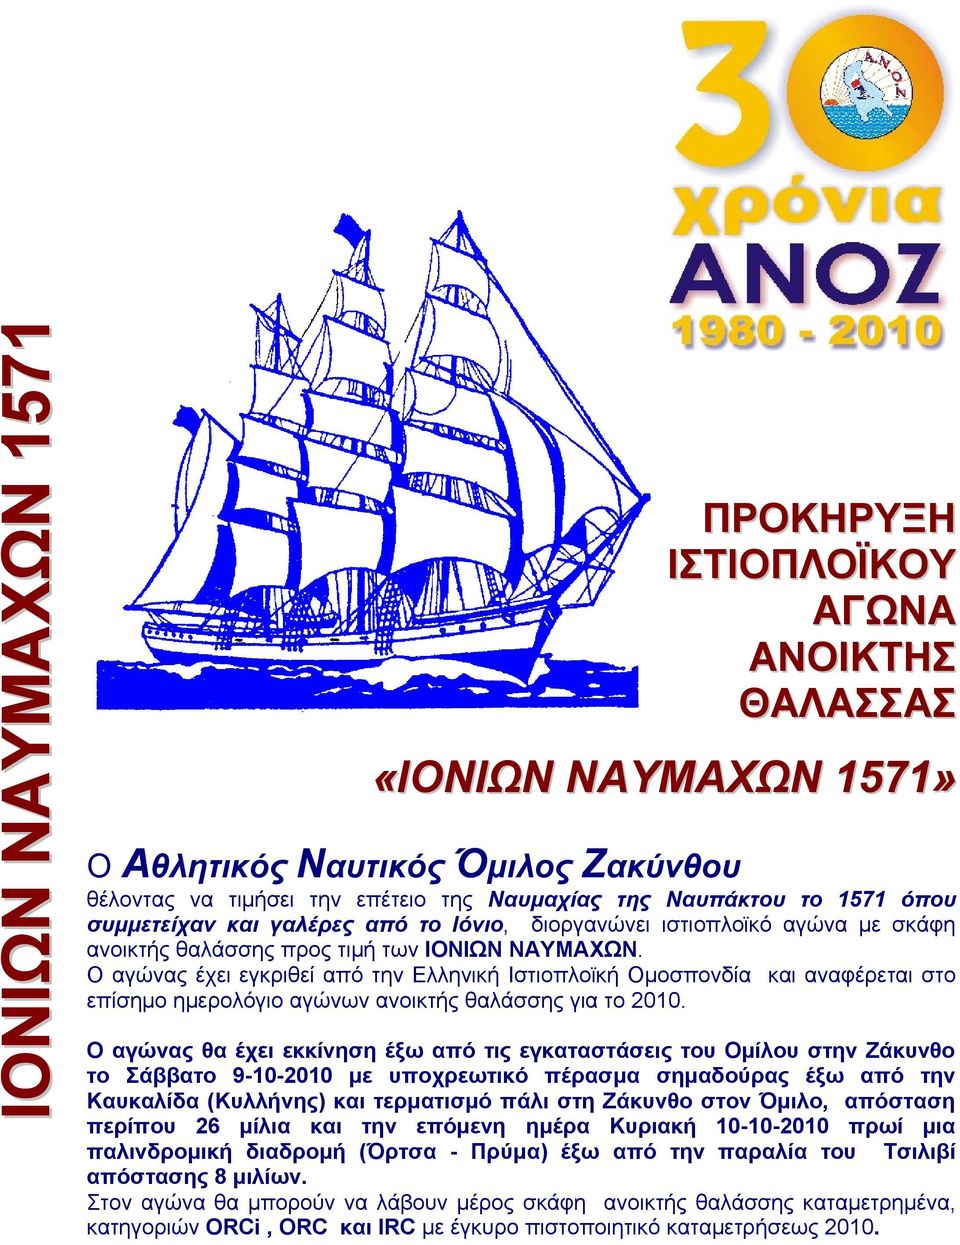 Ο αγώνας έχει εγκριθεί από την Ελληνική Ιστιοπλοϊκή Ομοσπονδία και αναφέρεται στο επίσημο ημερολόγιο αγώνων ανοικτής θαλάσσης για το 2010.